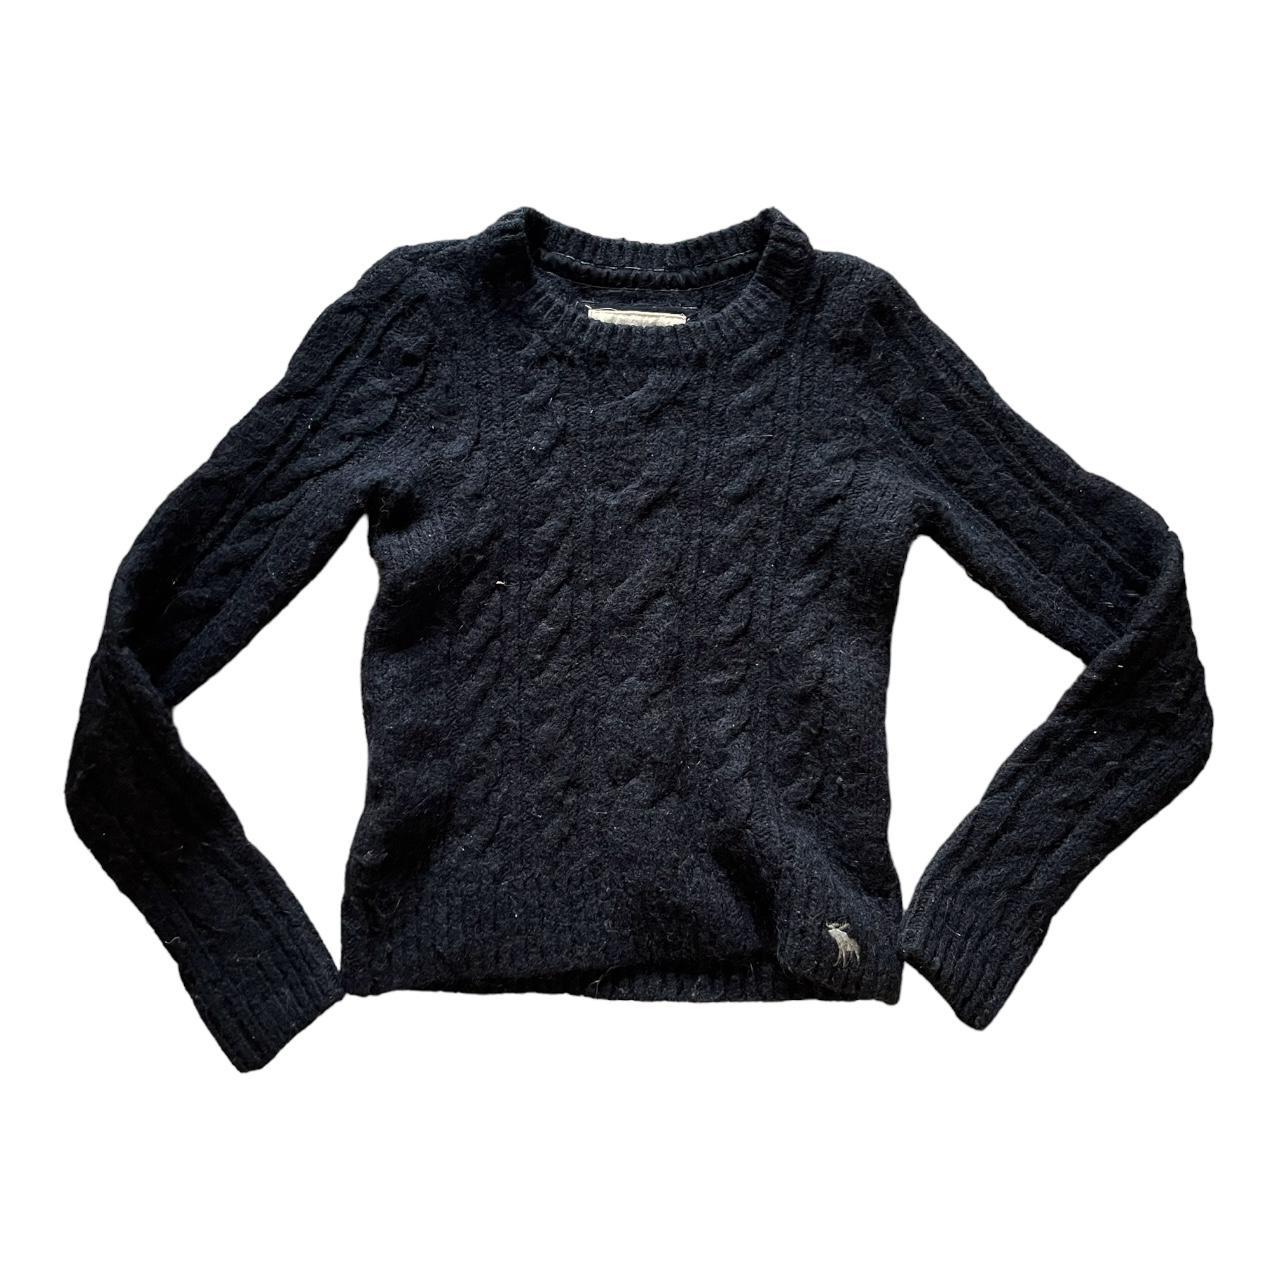 2000s Abercrombie & fitch black knit longsleeve... - Depop